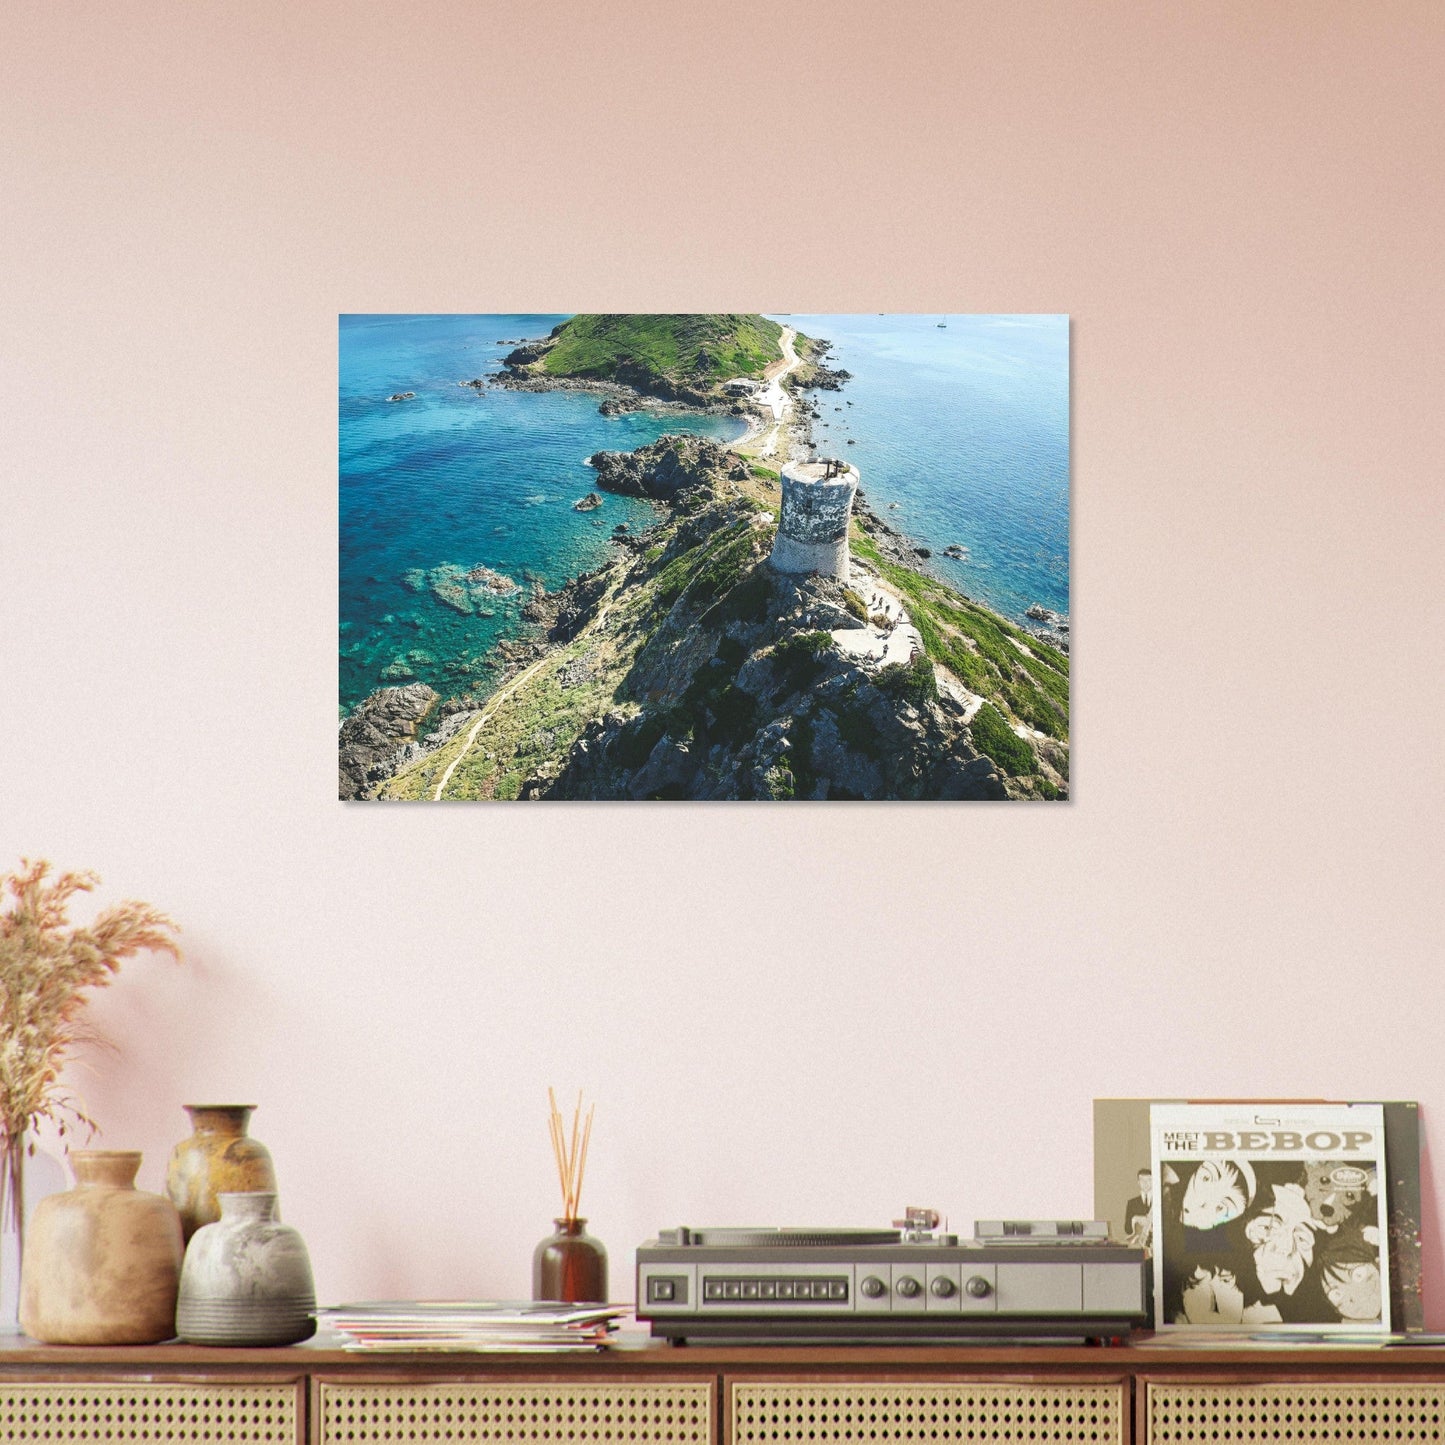 Vente Photo de la Tour de la parata, Corse - Tableau photo paysage